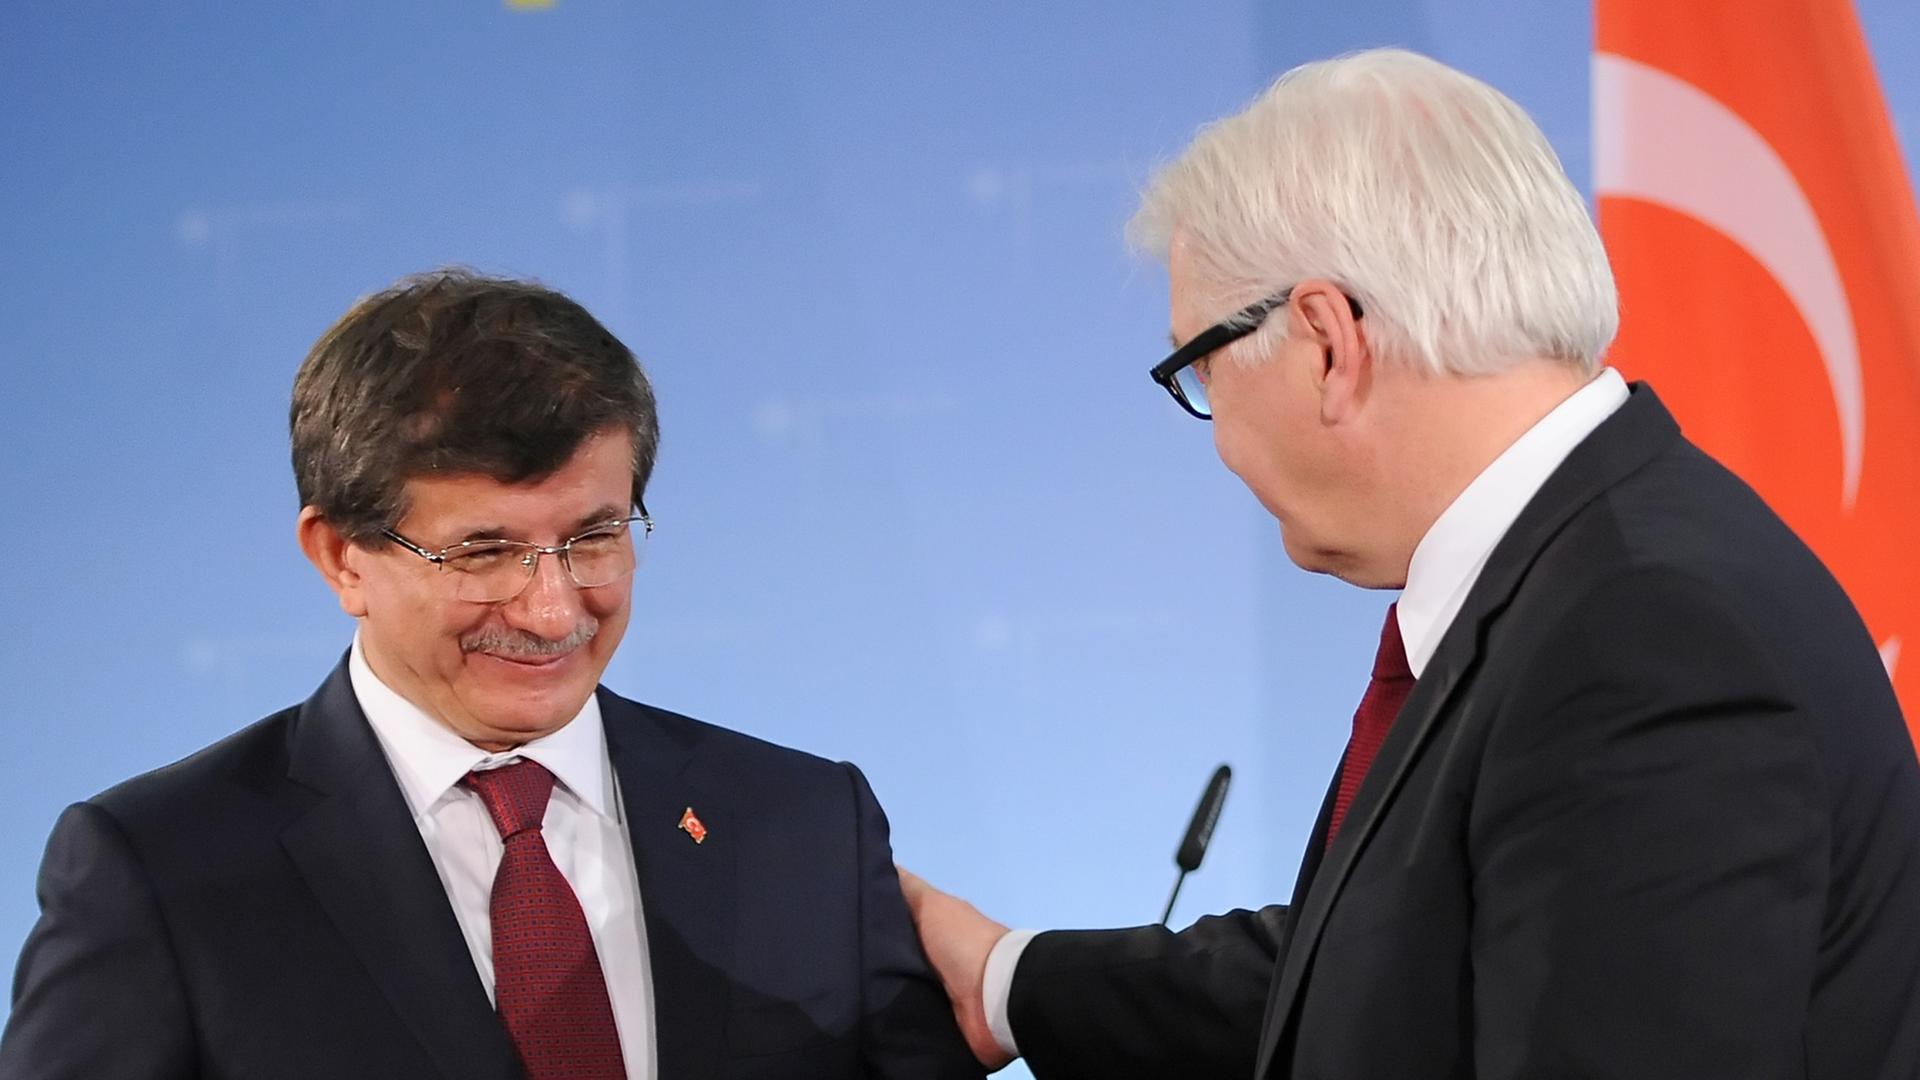 Bundesaußenminister Frank-Walter Steinmeier (SPD) und sein türkischer Amtskollegen Ahmet Davutoglu (l) am 03.02.2014 bei einer Pressekonferenz in Berlin.